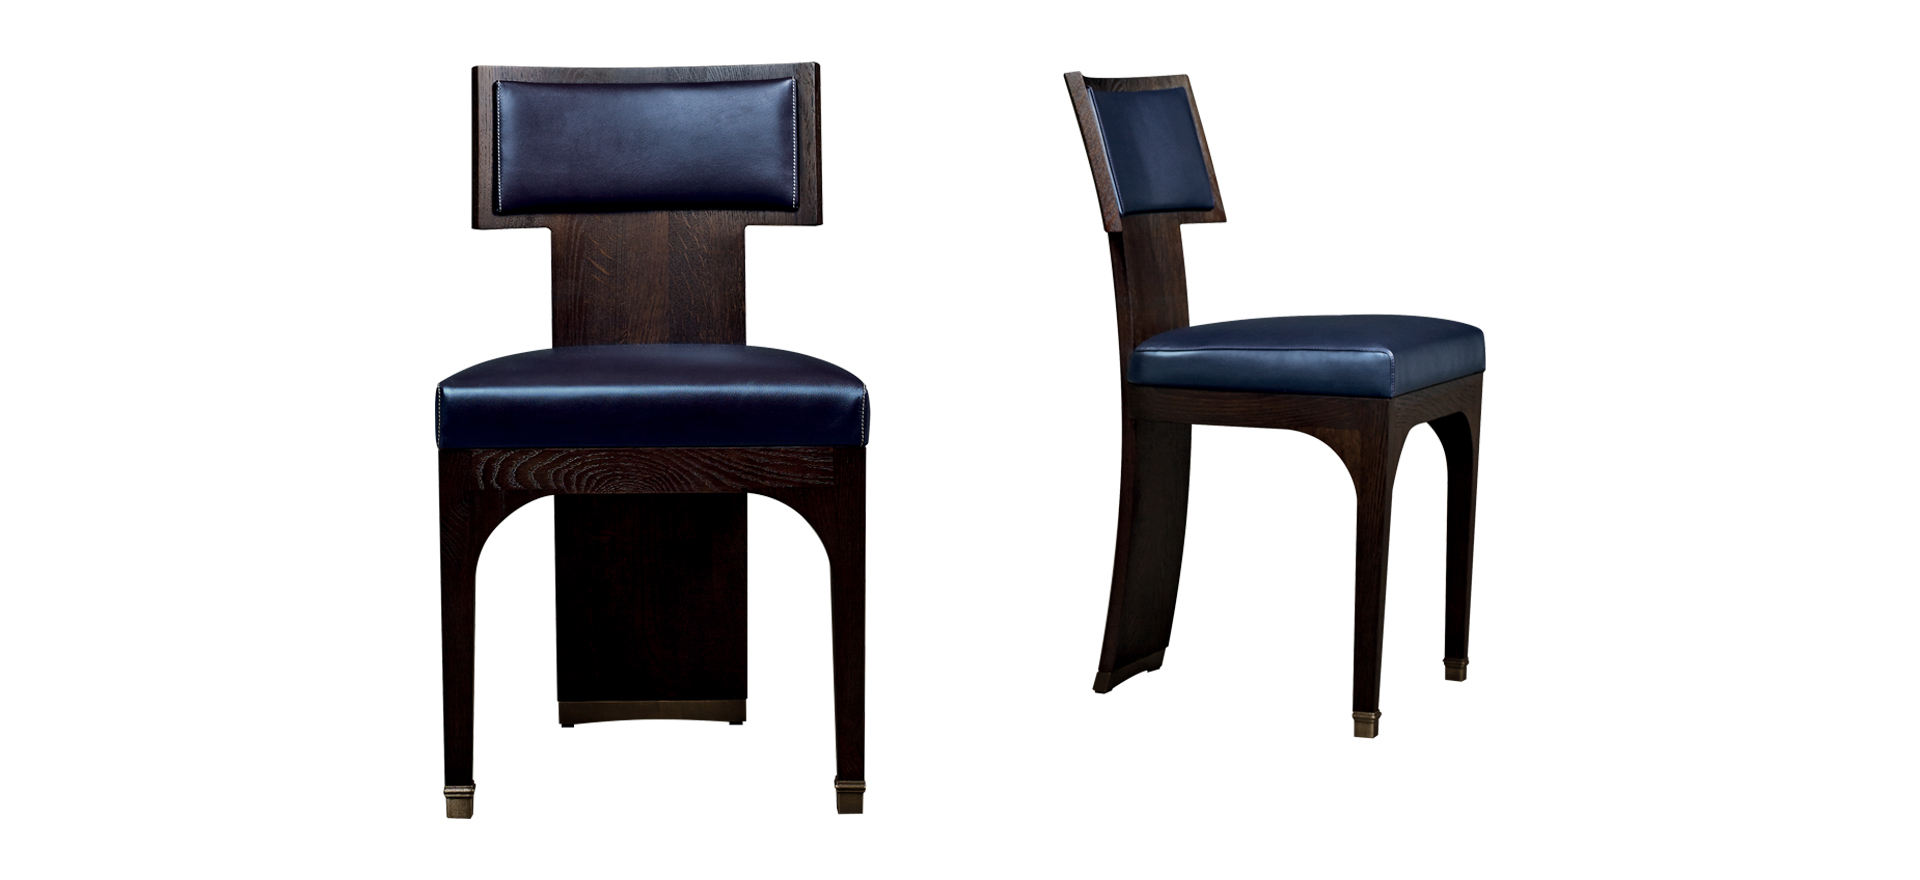 DC Chair è una sedia da pranzo in legno con seduta e schienale in pelle e piedini in bronzo, della collezione The London Collection di Promemoria | Promemoria